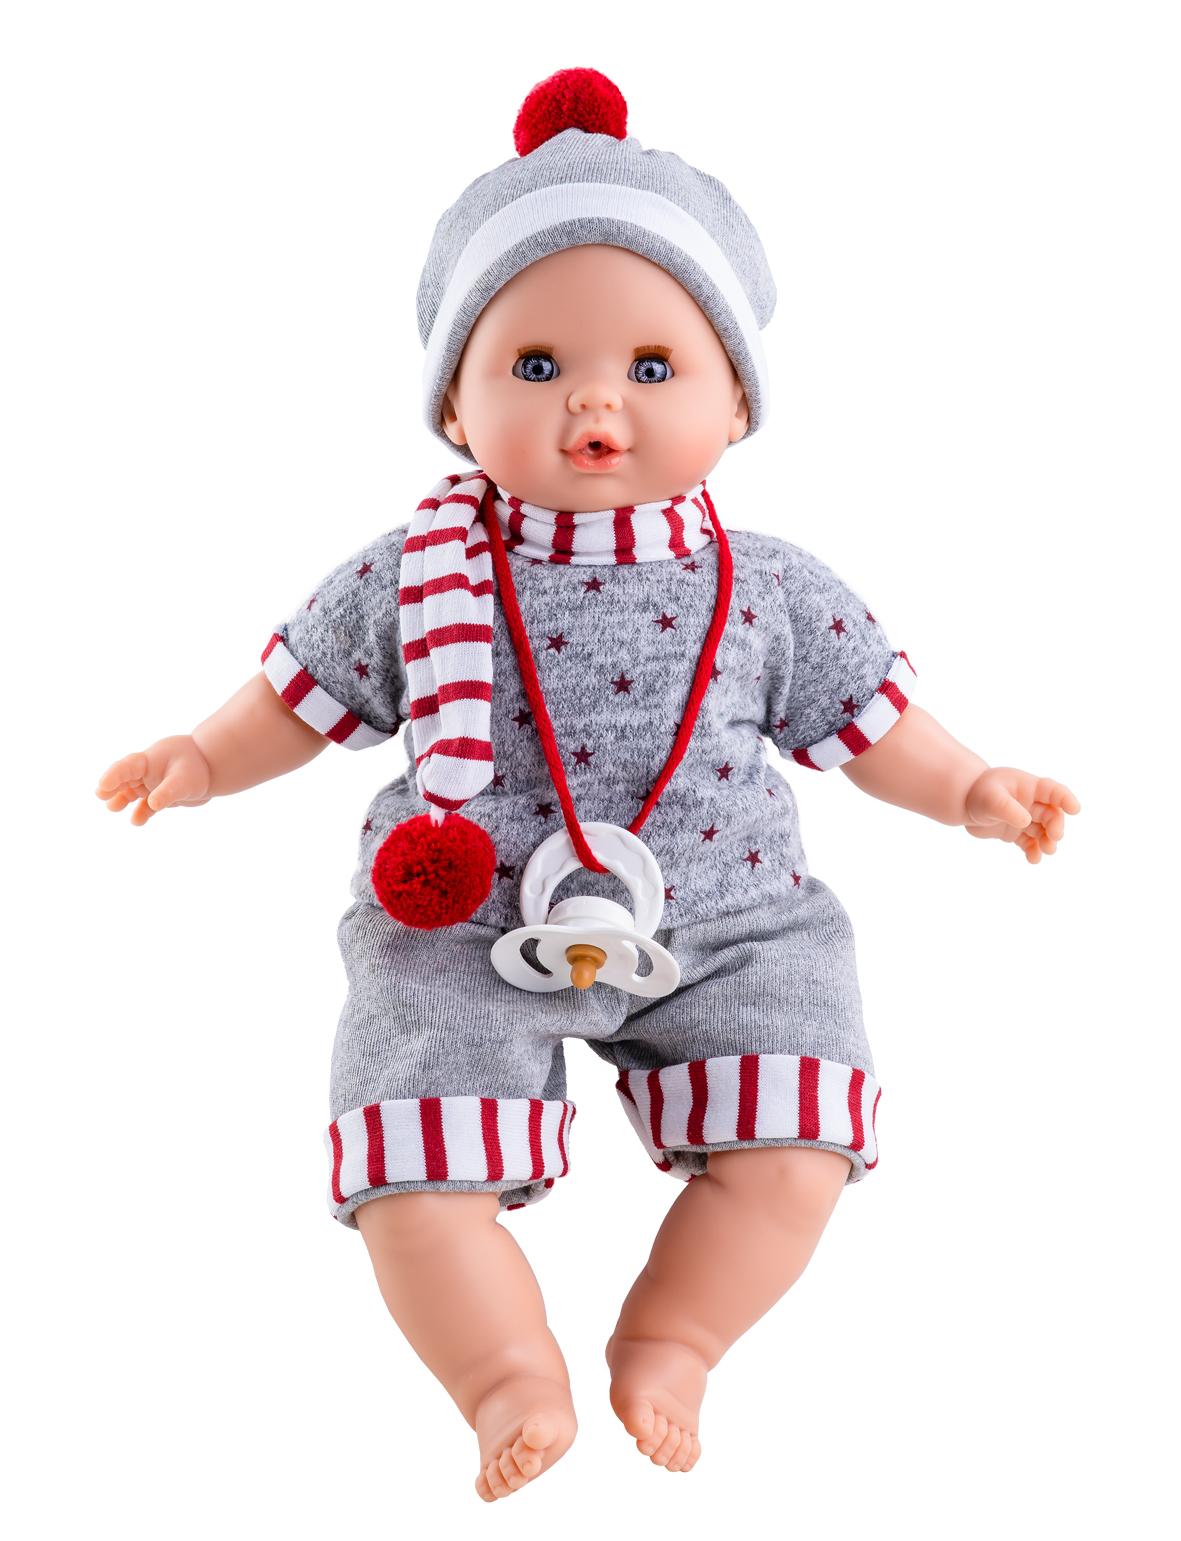 Realistické miminko - chlapeček Alex s pruhovanou šálou od firmy Paola Reina